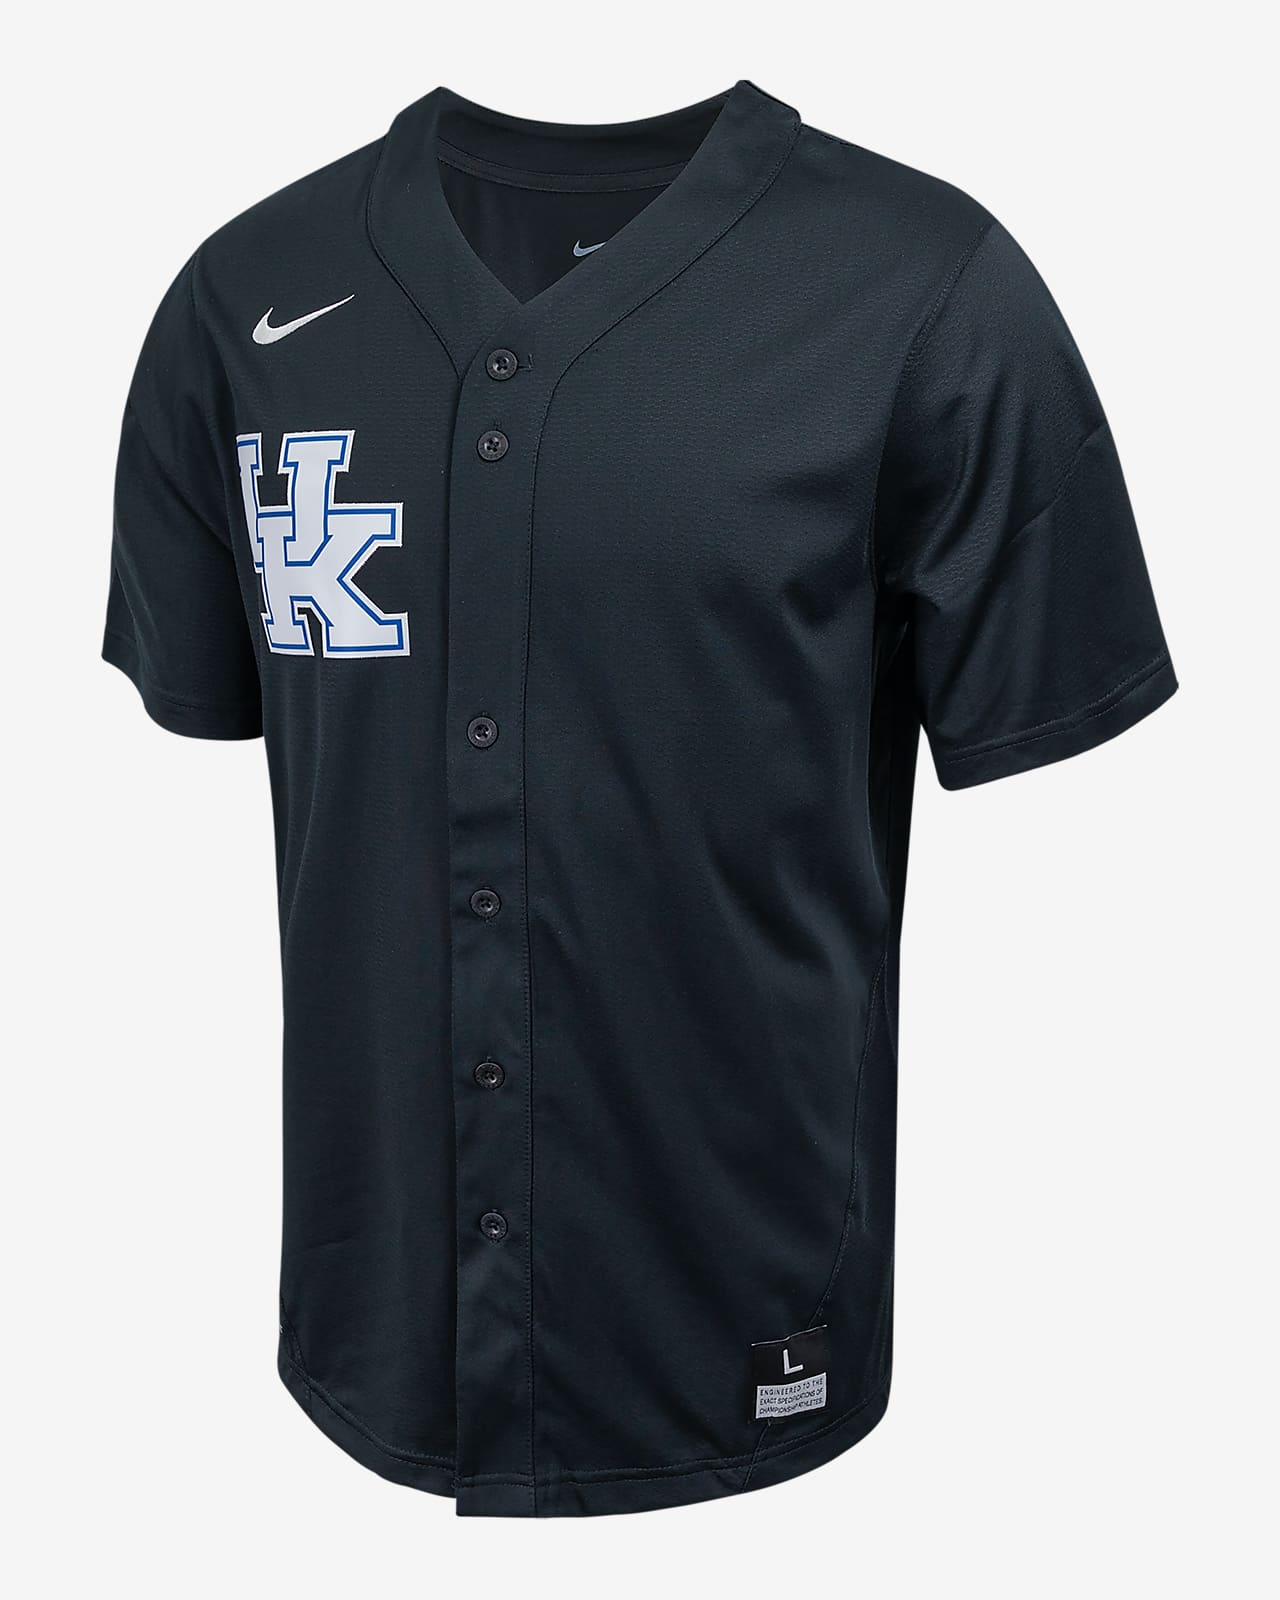 Kentucky Men's Nike College Full-Button Baseball Jersey